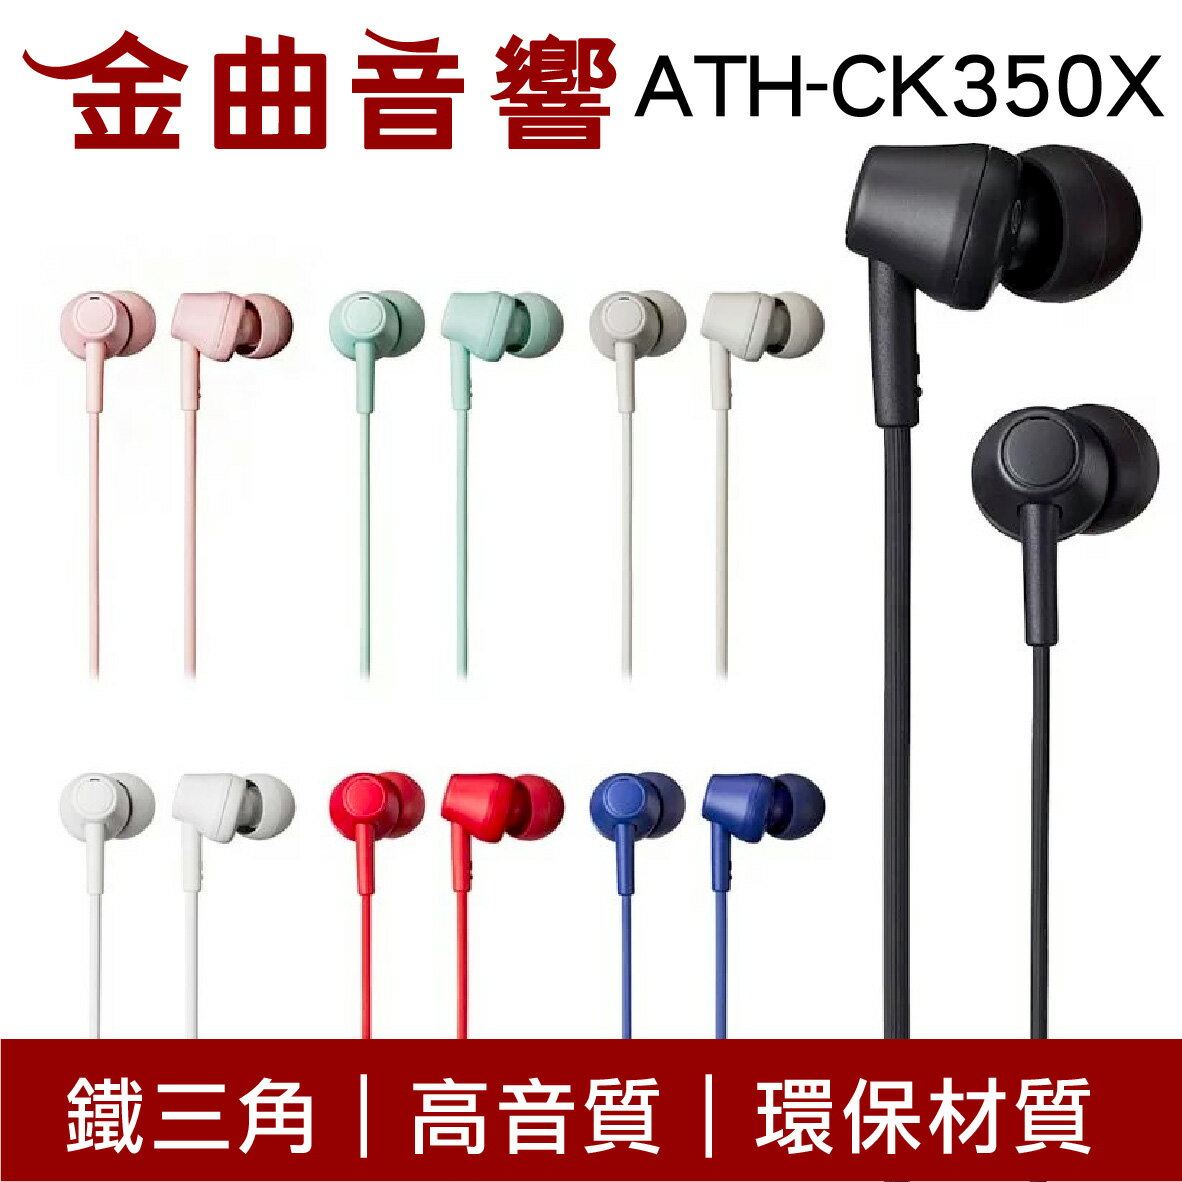 鐵三角 ATH-CK350X 多色可選 高音質 耳道式 耳機 ATH-CK350Xis | 金曲音響